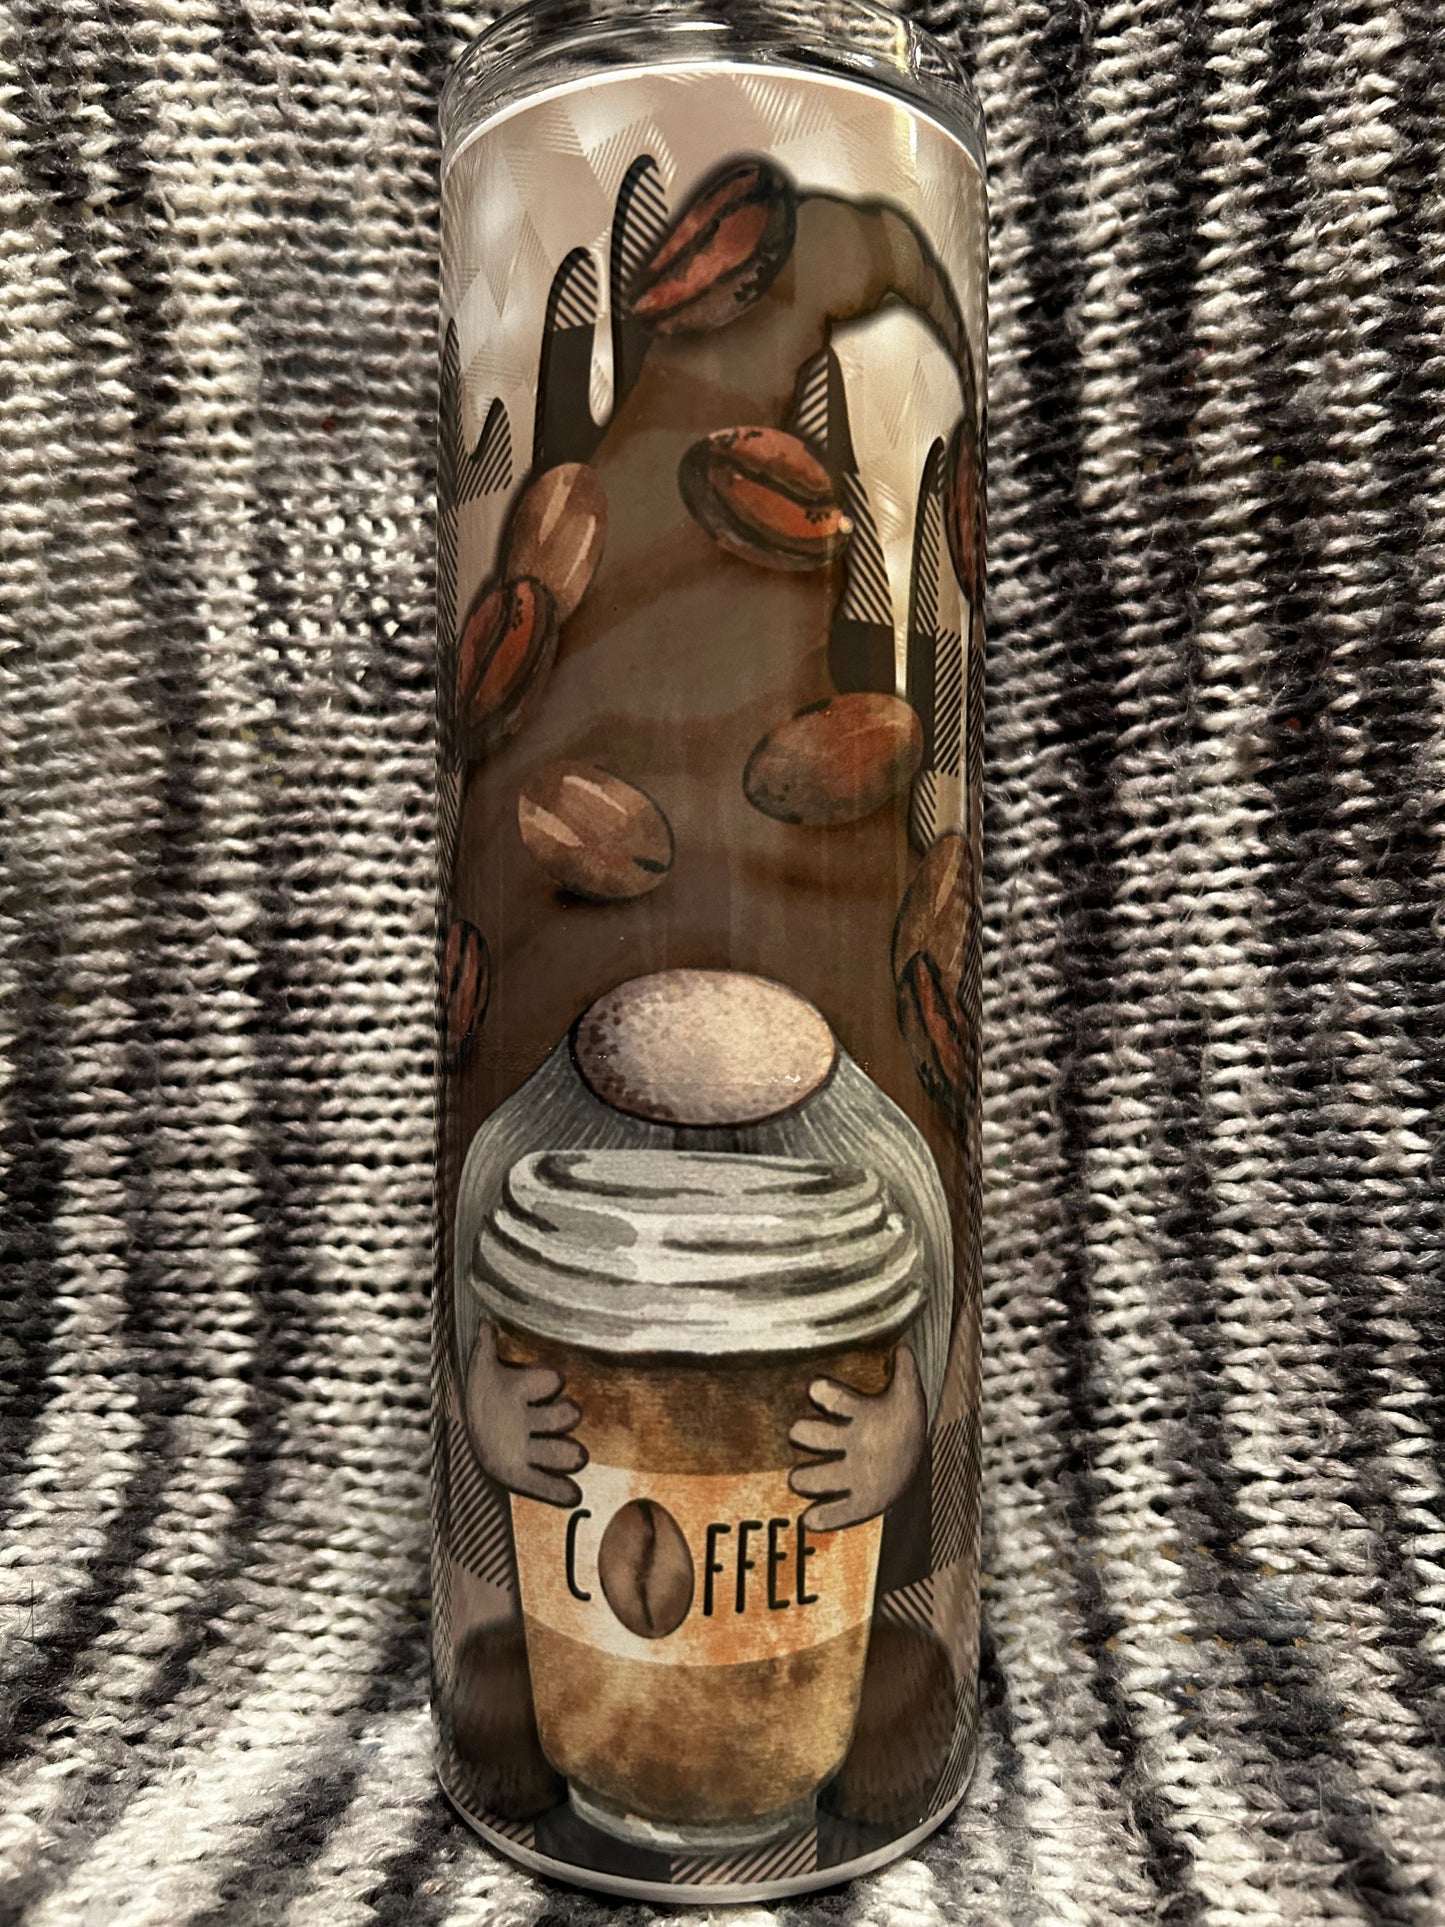 Coffee gnome 20 oz tumbler